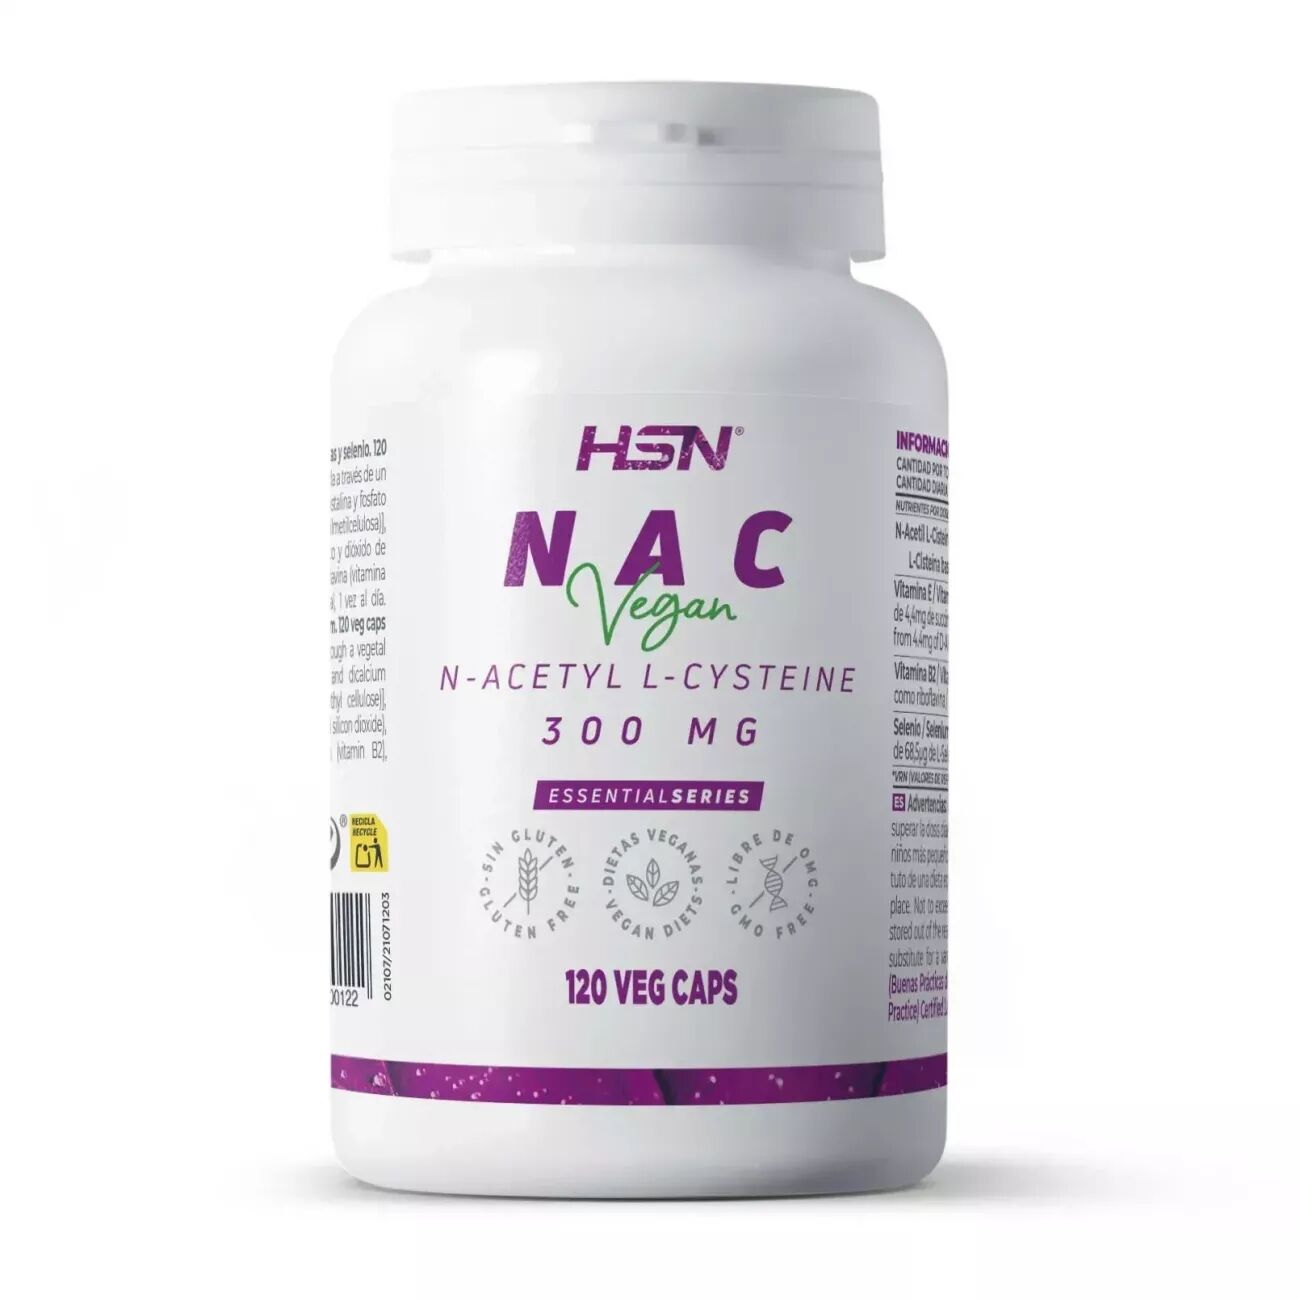 HSN Nac (n-acetil-l-cisteina) 300mg - 120 veg caps